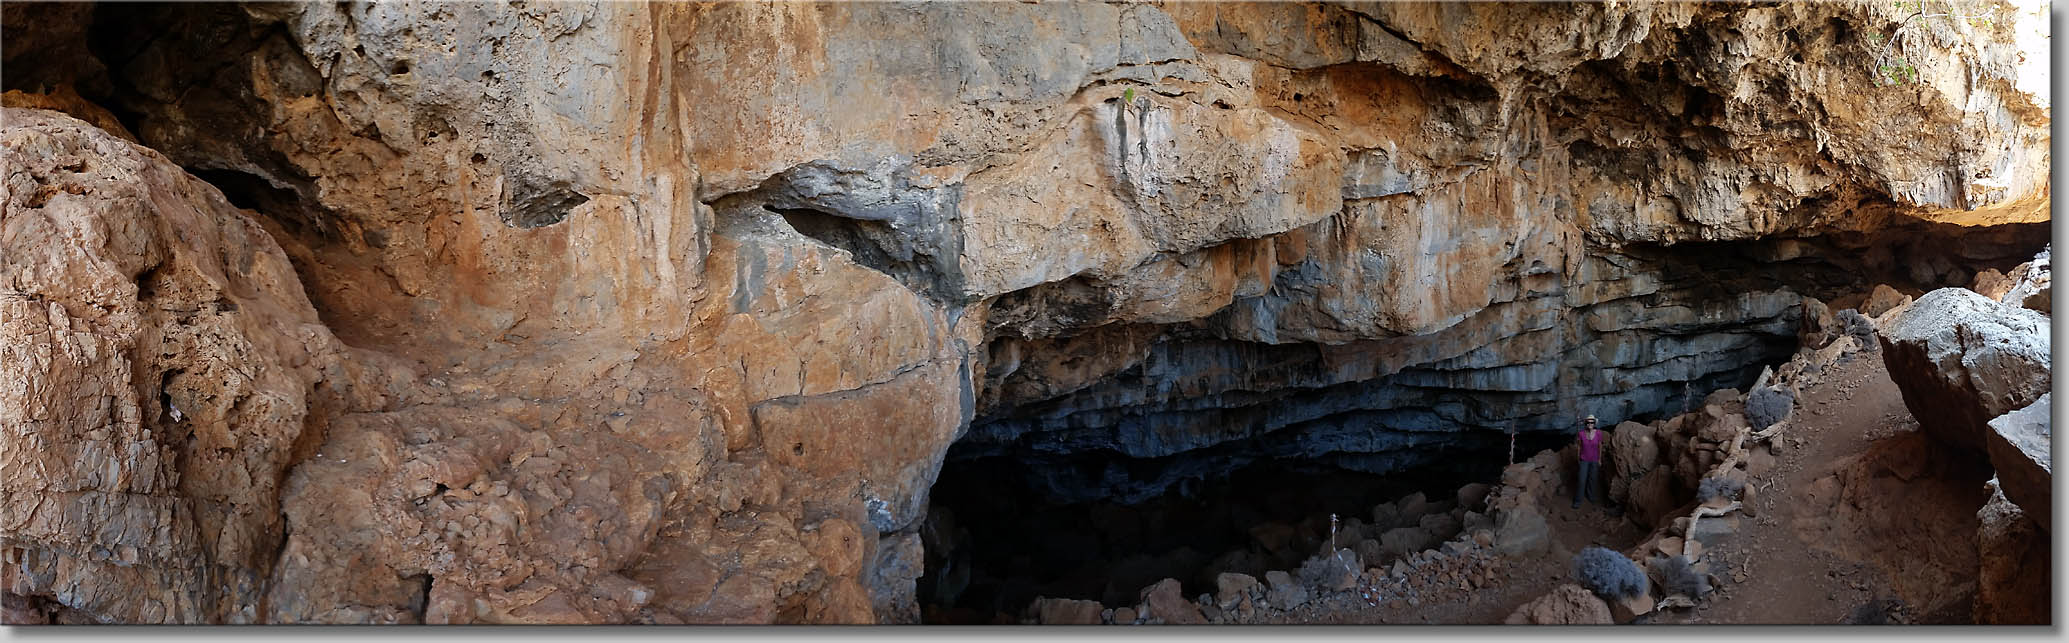 Pelekita Cave (c) Th.Gramanitsch 2018